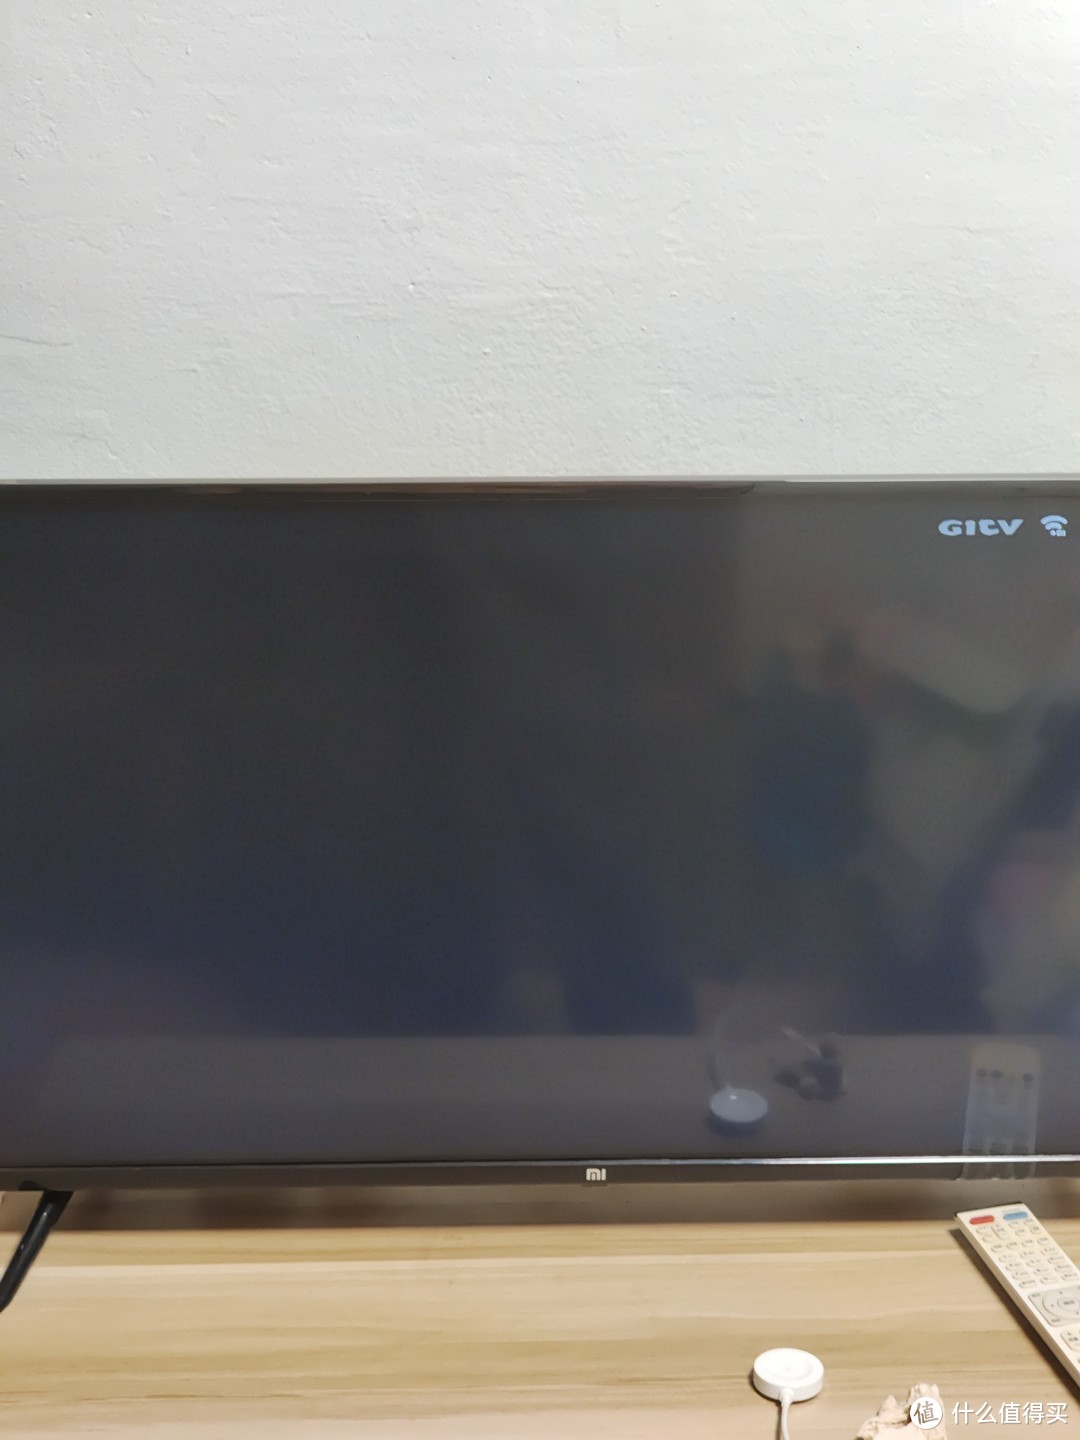 购买小米低配电视要慎重，有可能会导致电视功能失效。